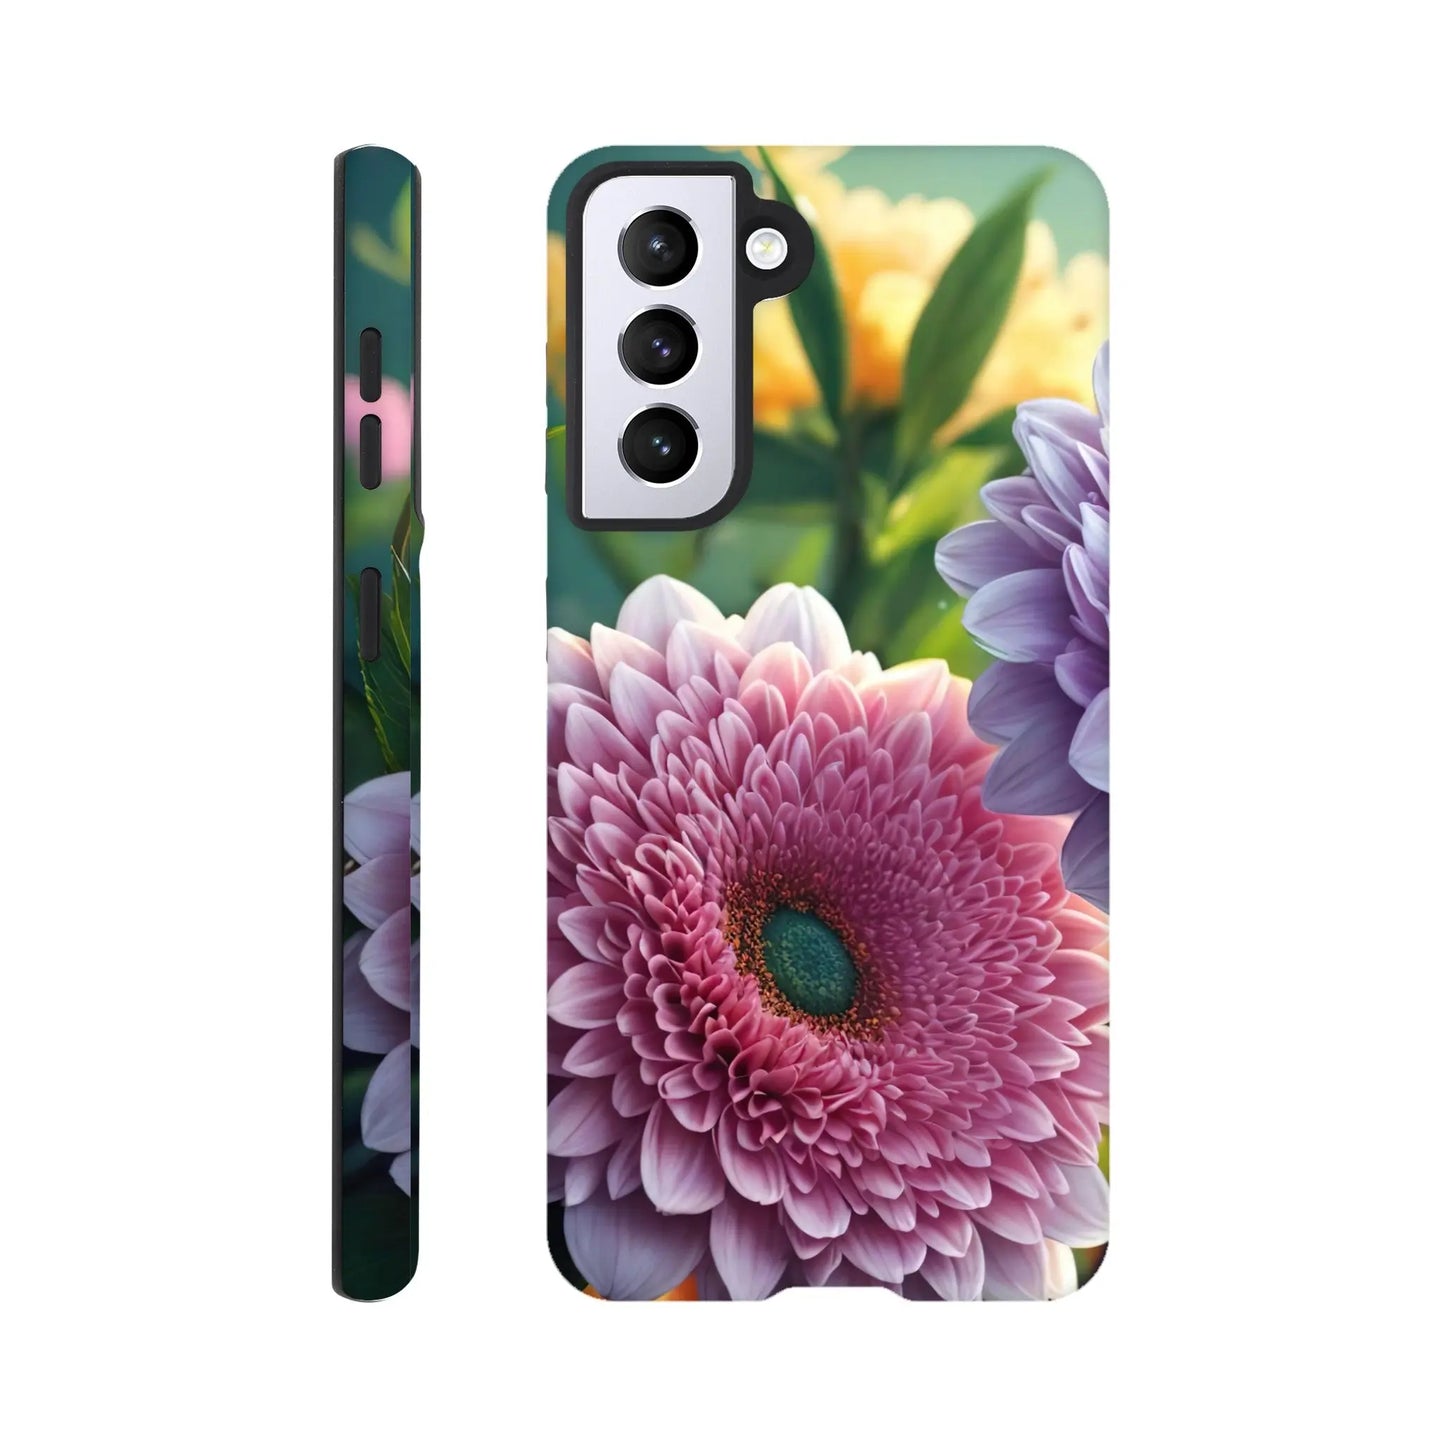 Smartphone-Hülle "Hart" - Blumen Vielfalt - Foto Stil, KI-Kunst, Pflanzen, Galaxy-S21 - RolConArt